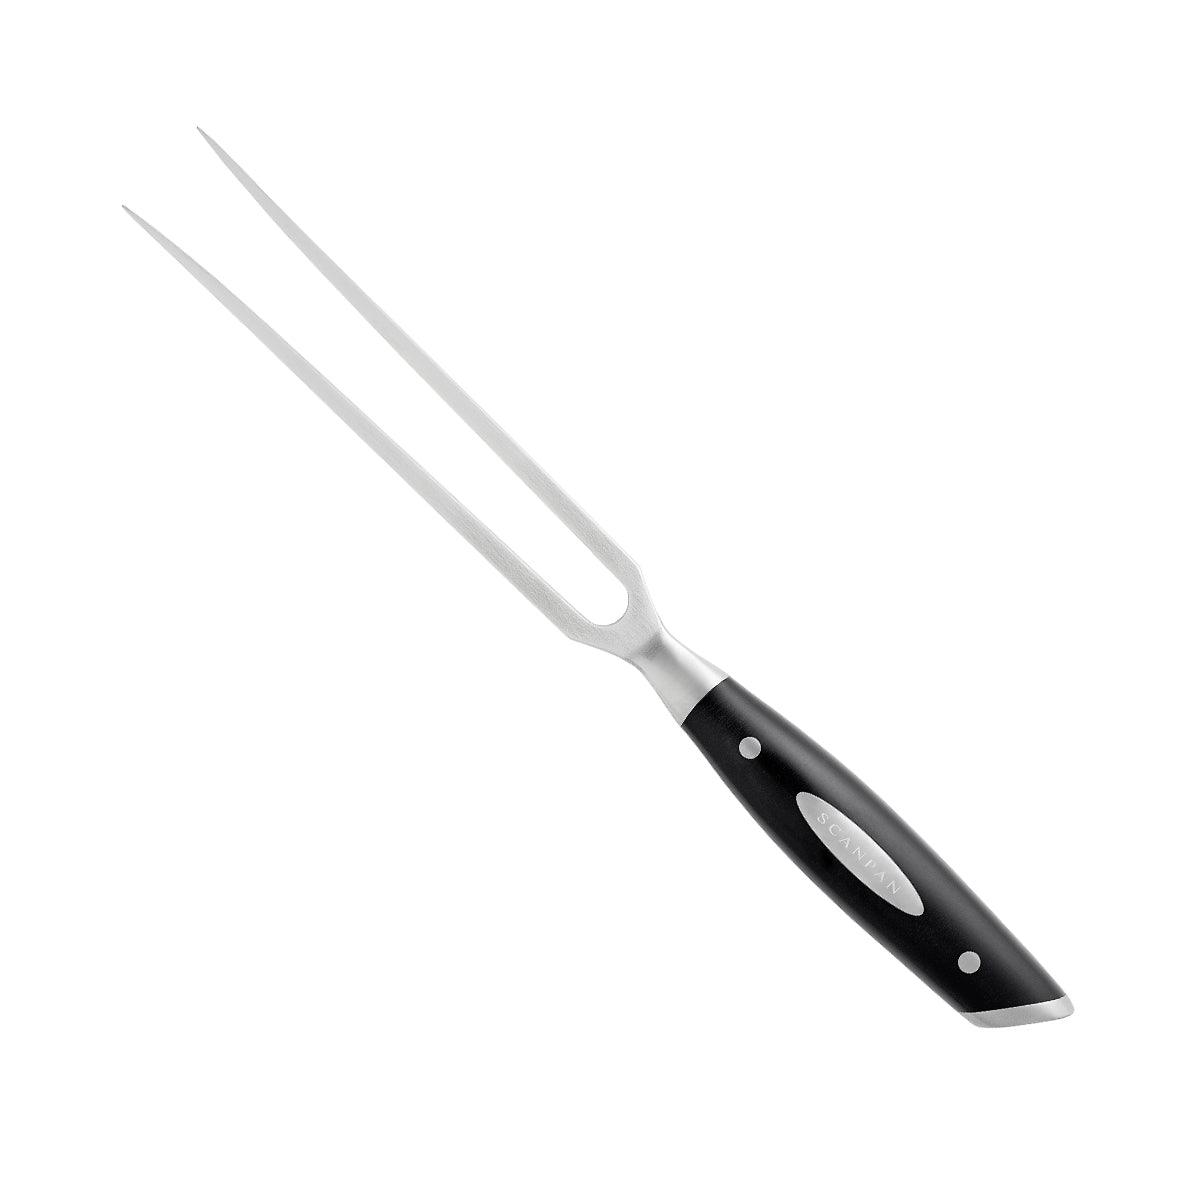 http://knife.co.nz/cdn/shop/products/scanpan-classic-fork-15cm-869401.jpg?v=1693992948